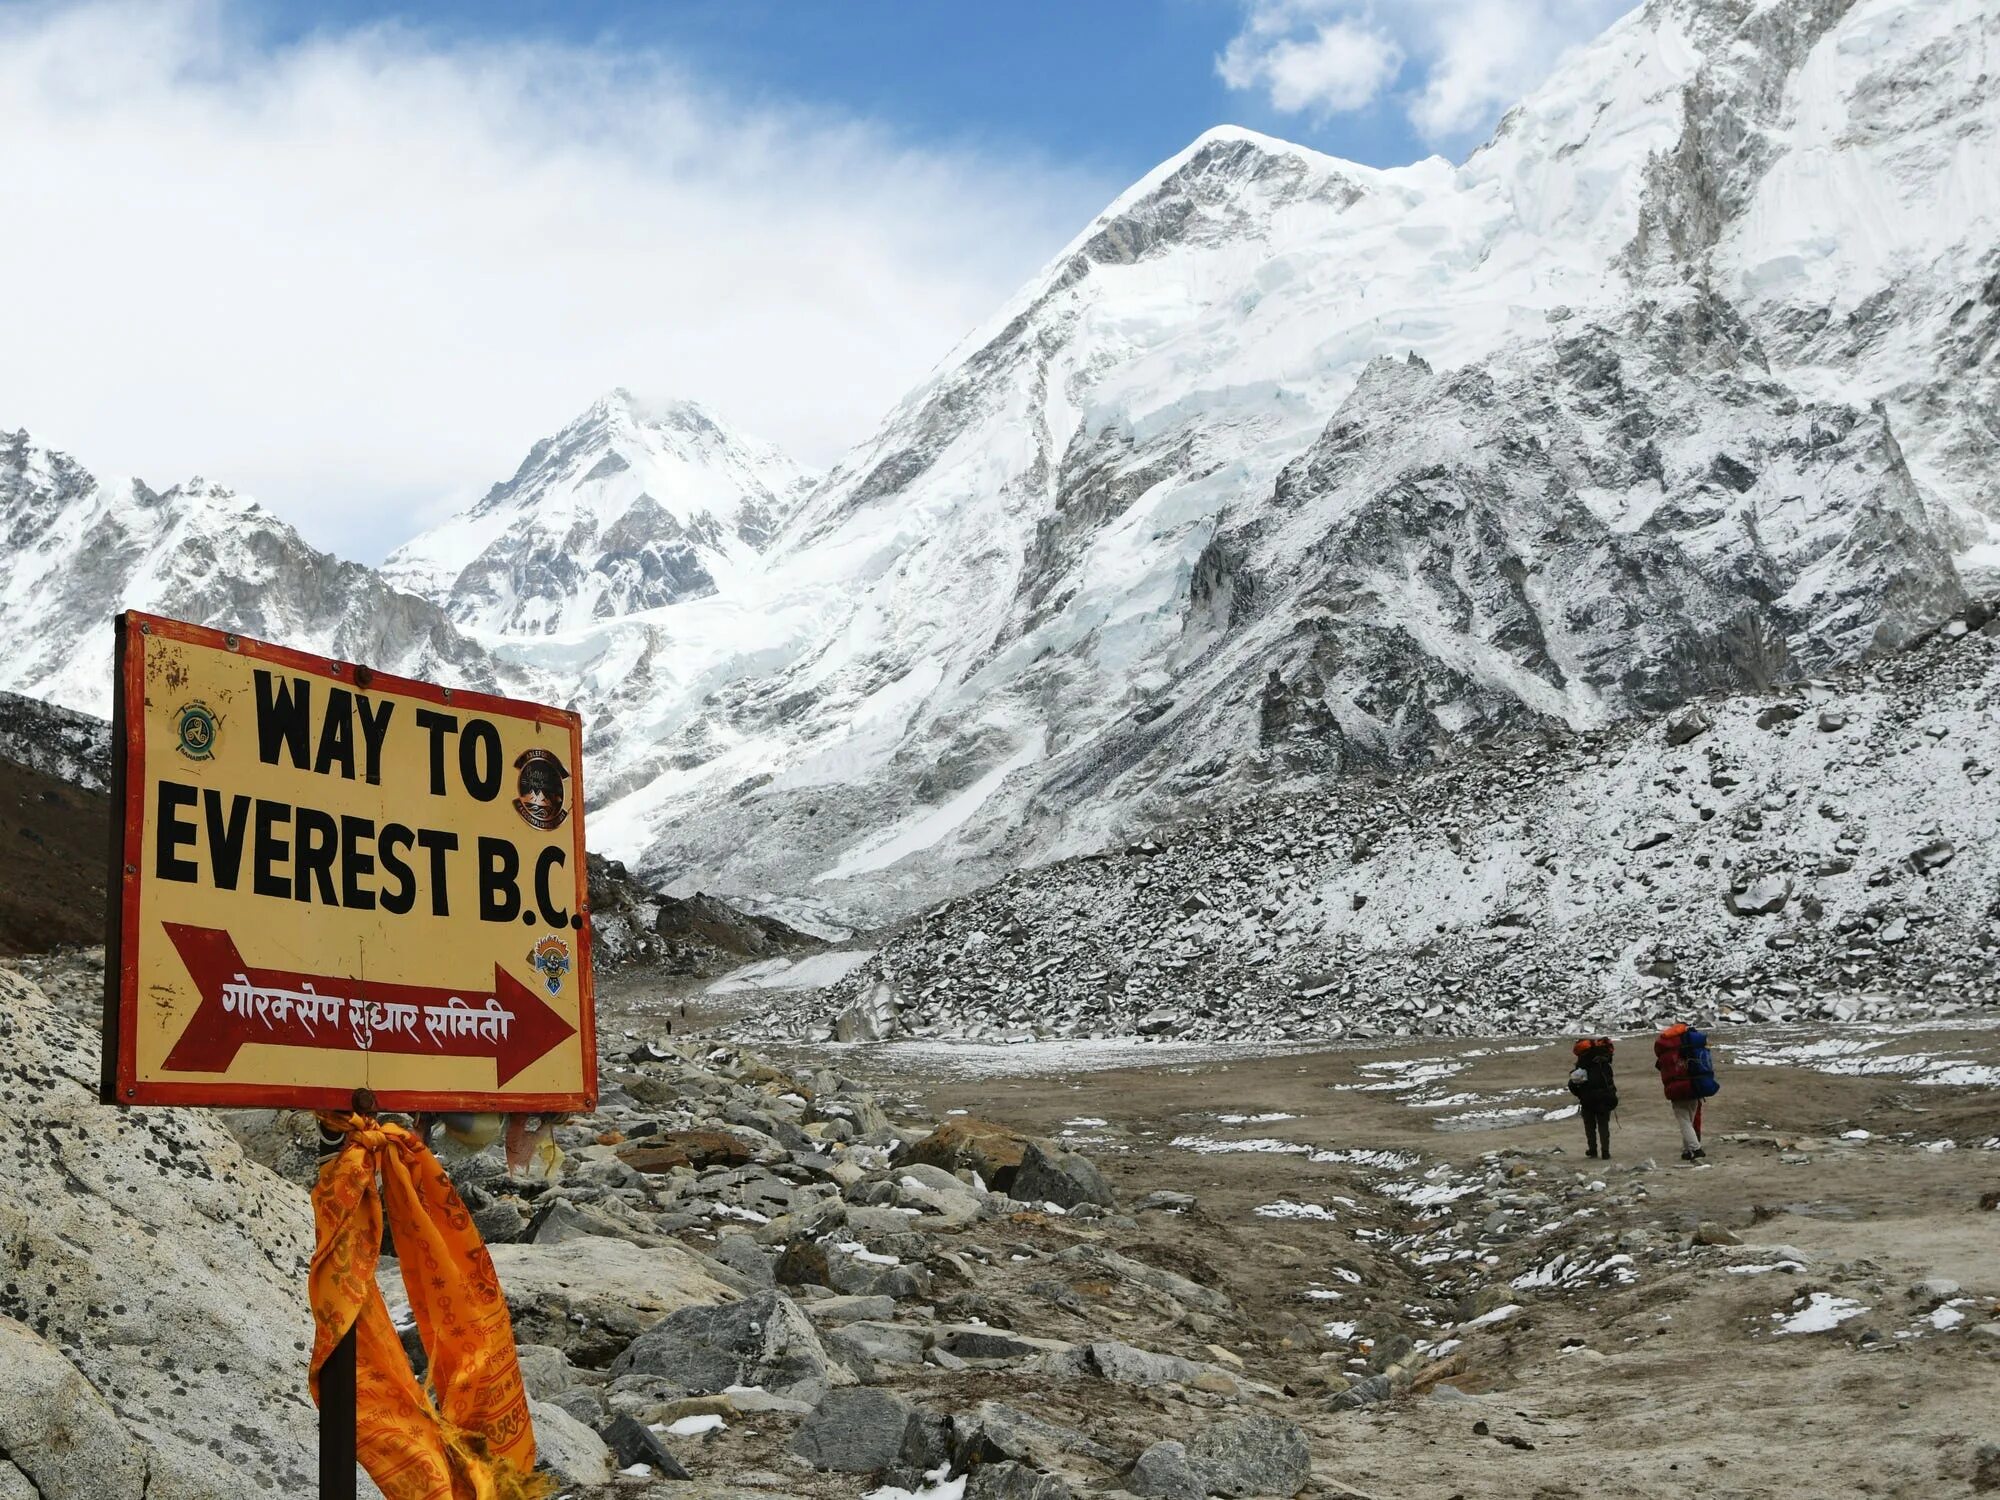 Mount everest is high in the world. Эверест, Непал/Тибет. Эверест самая высокая точка. Табличка в горах.